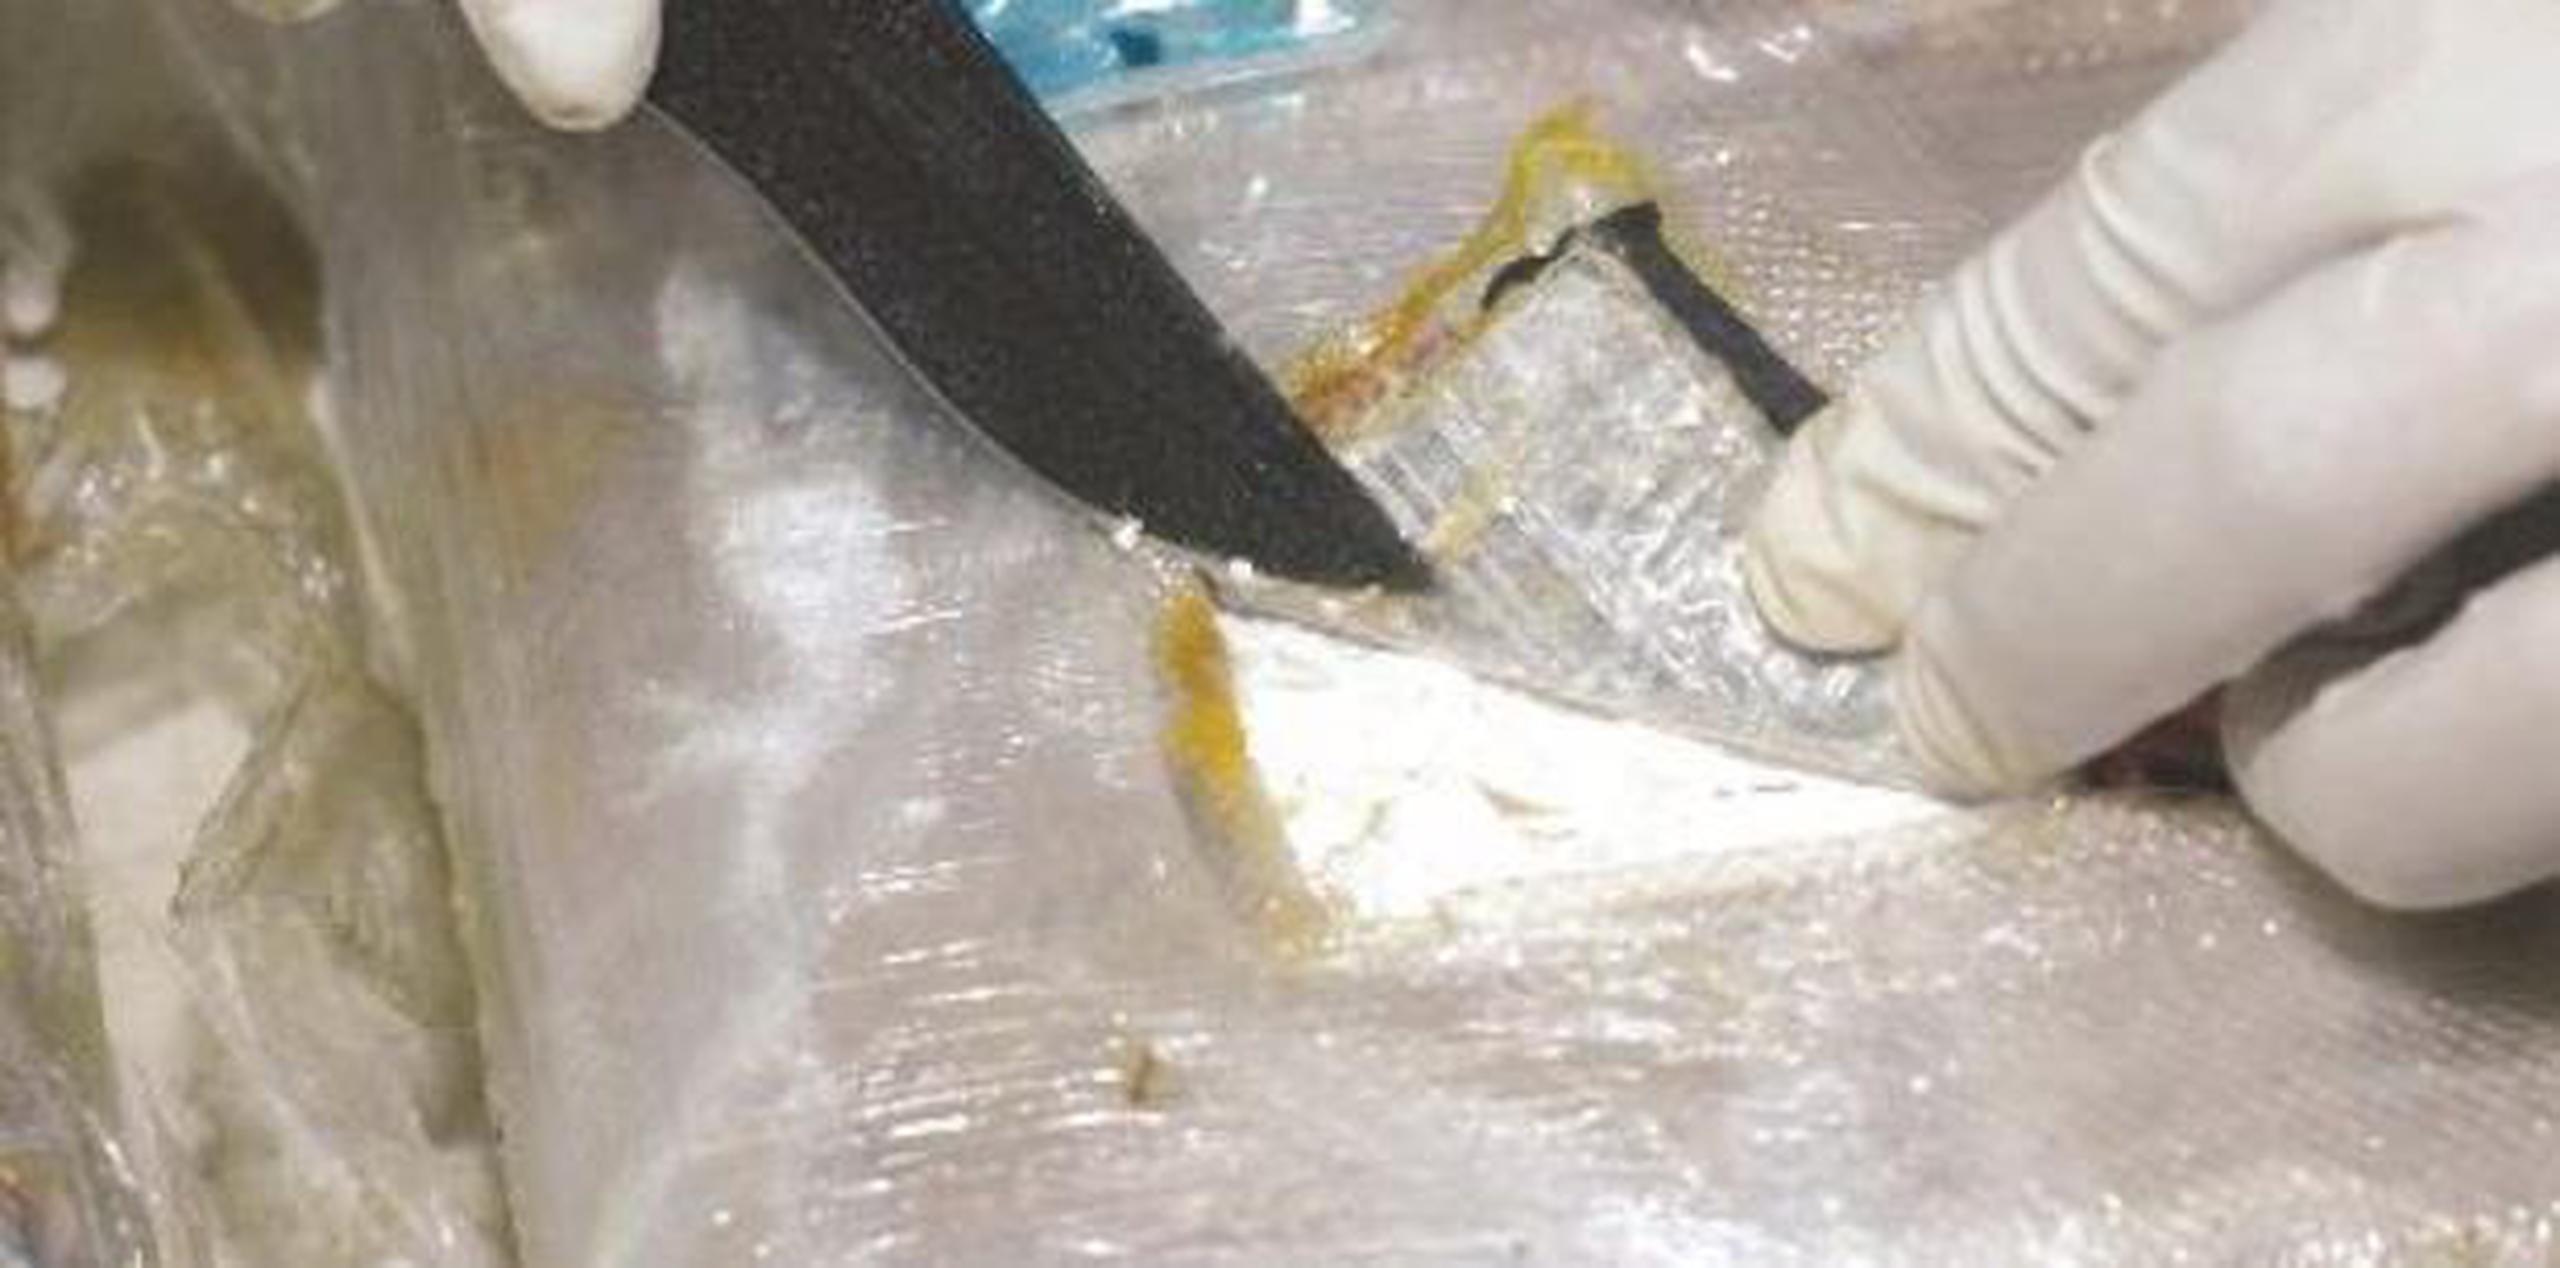 Tras examinar el equipaje, los oficiales federales descubrieron en la maleta nueve piezas en forma de ladrillo, que resultaron dar positivo a cocaína. (Archivo)